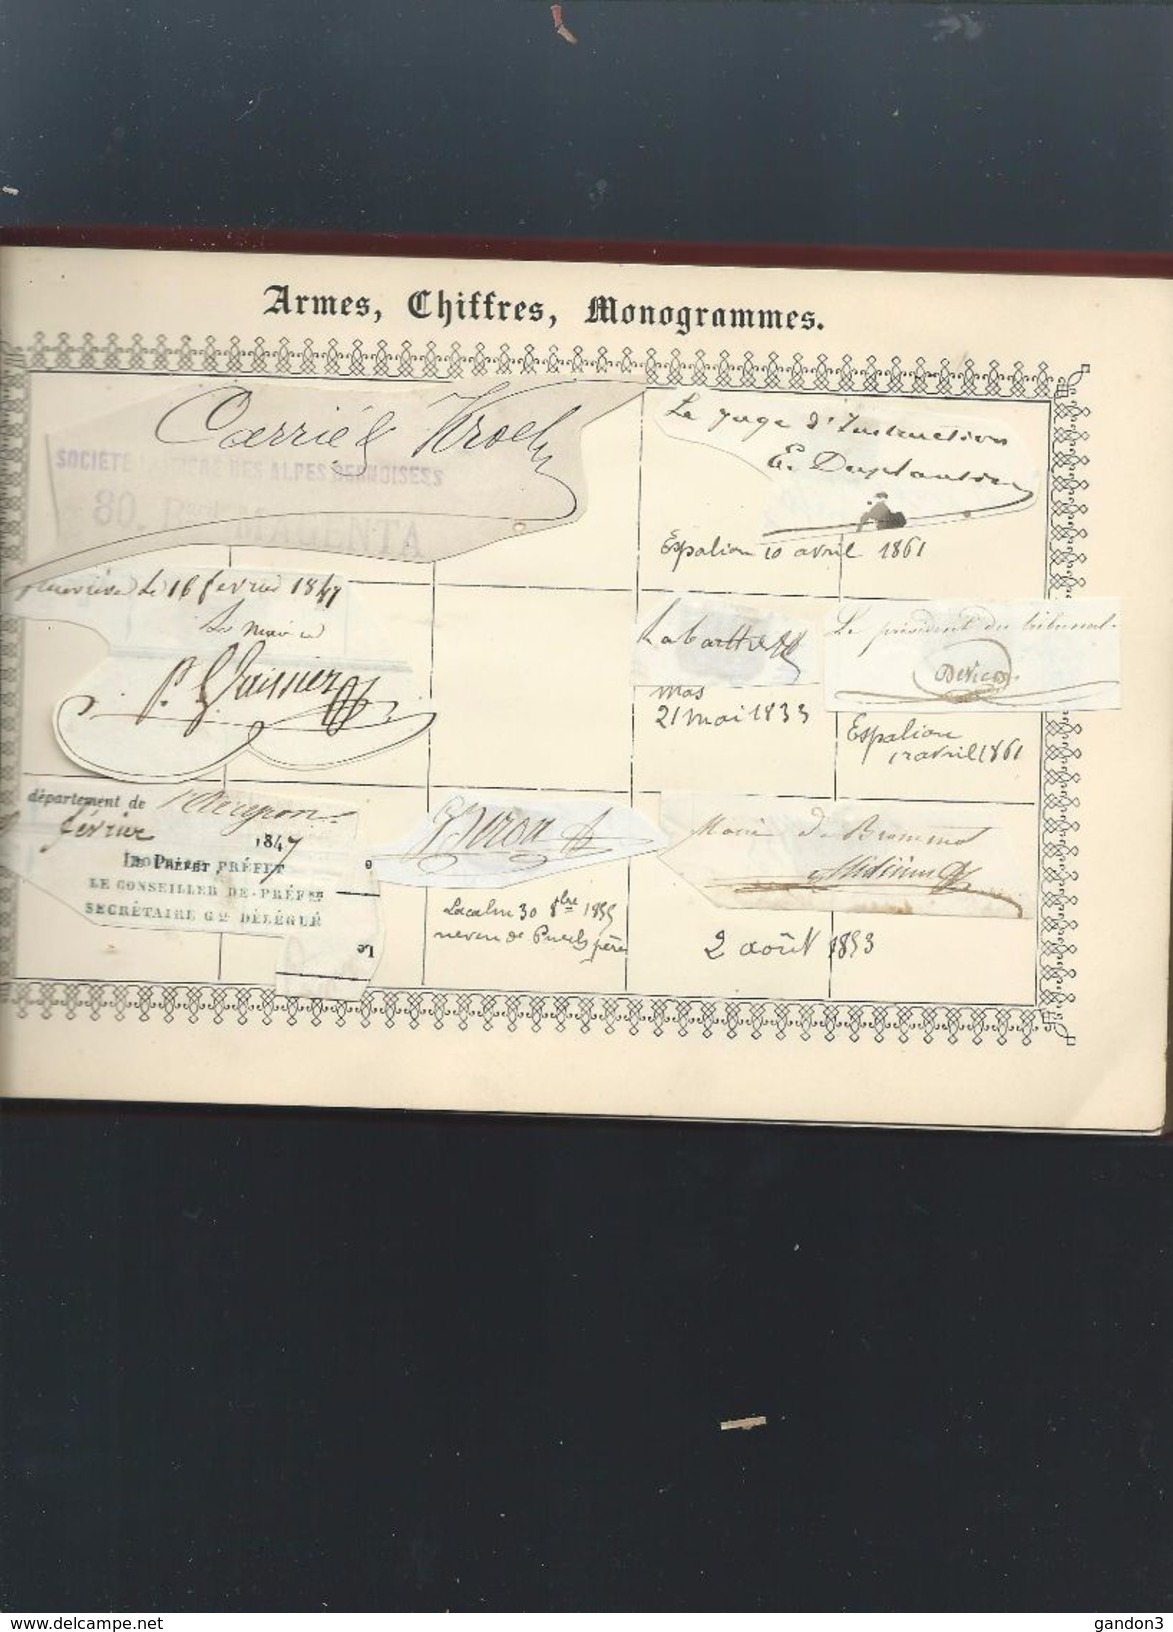 Petit   ALBUM   d' Autographes  des Années  1600  à  1800 et plus - principalement département de l' AVEYRON -